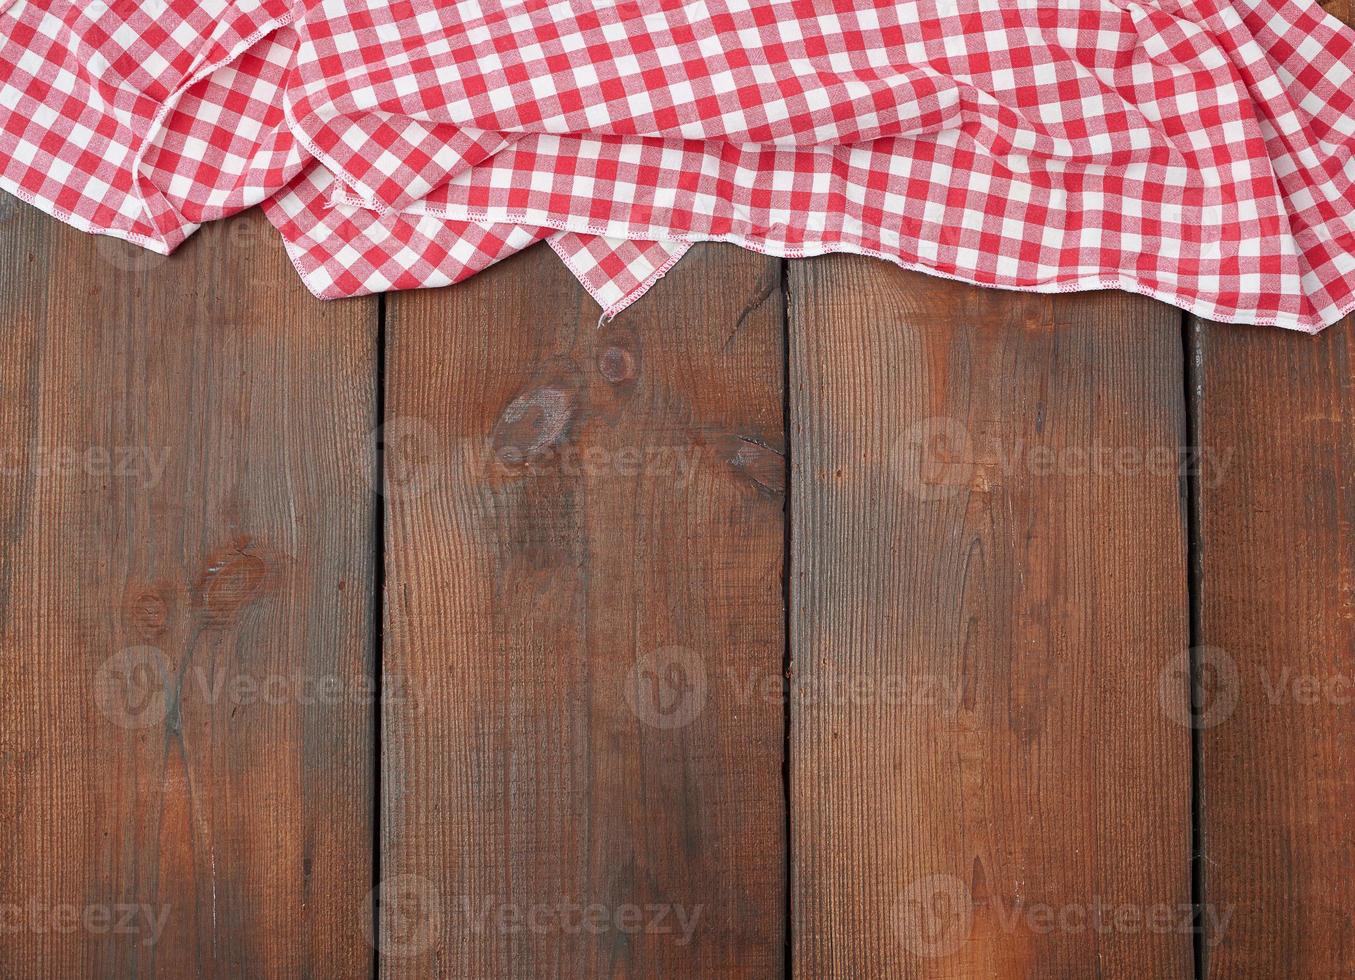 weiß rot kariertes Küchentuch auf braunem Holzhintergrund foto